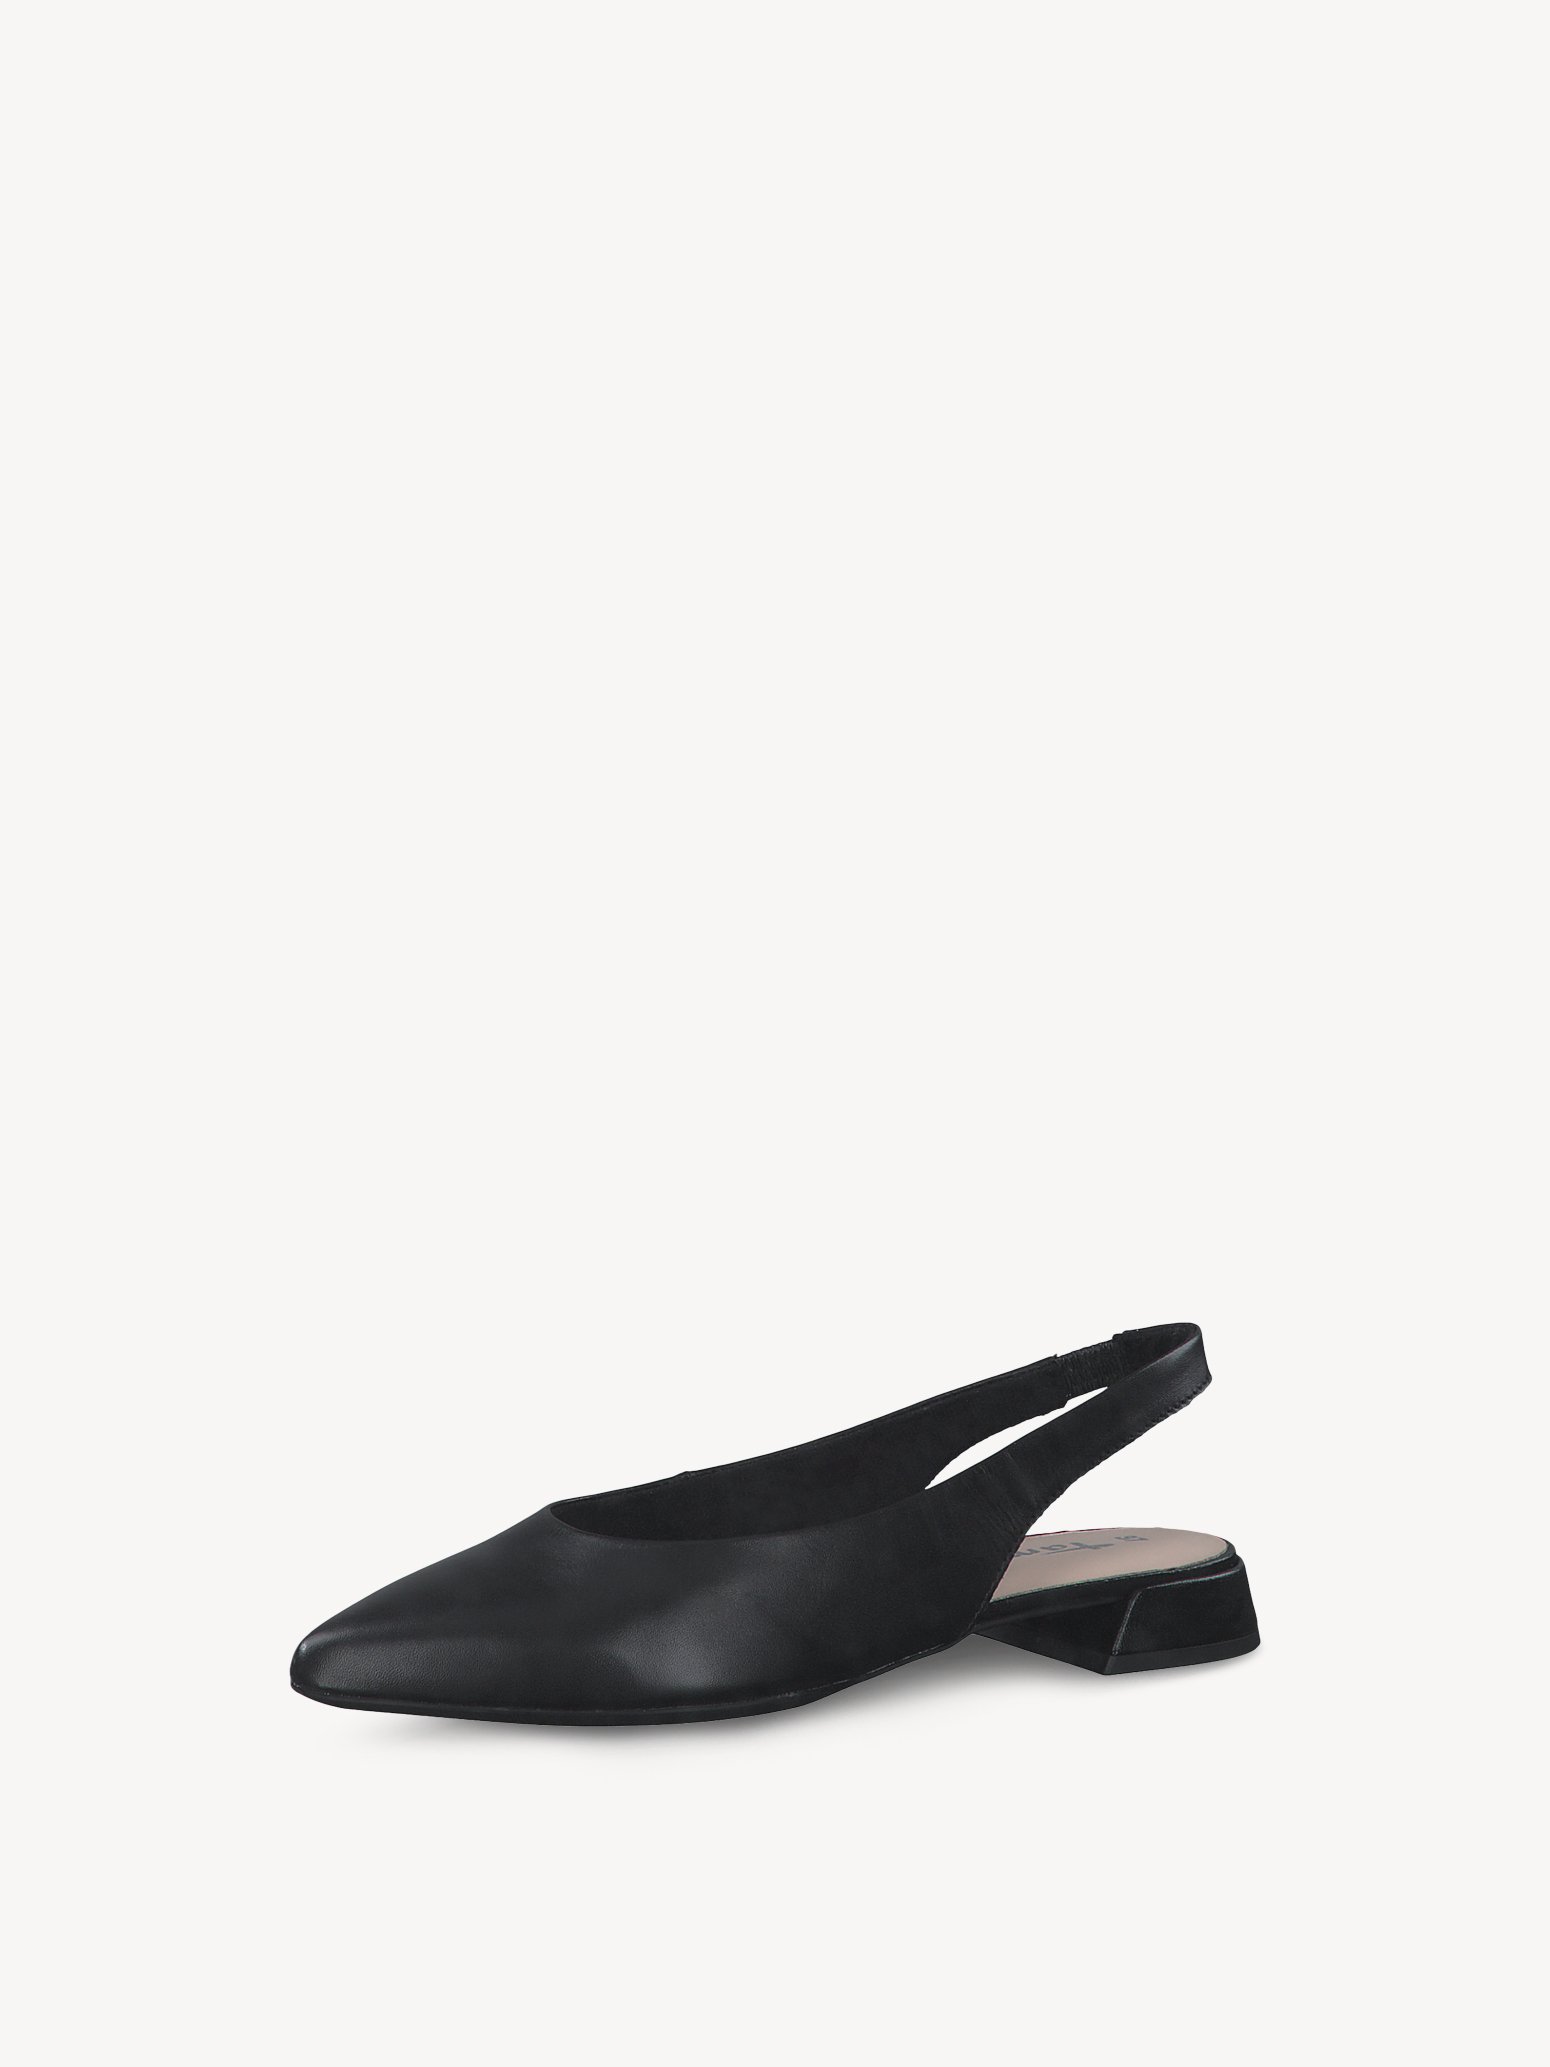 Туфли женские Tamaris 1-1-29501-20 черные 40 RU